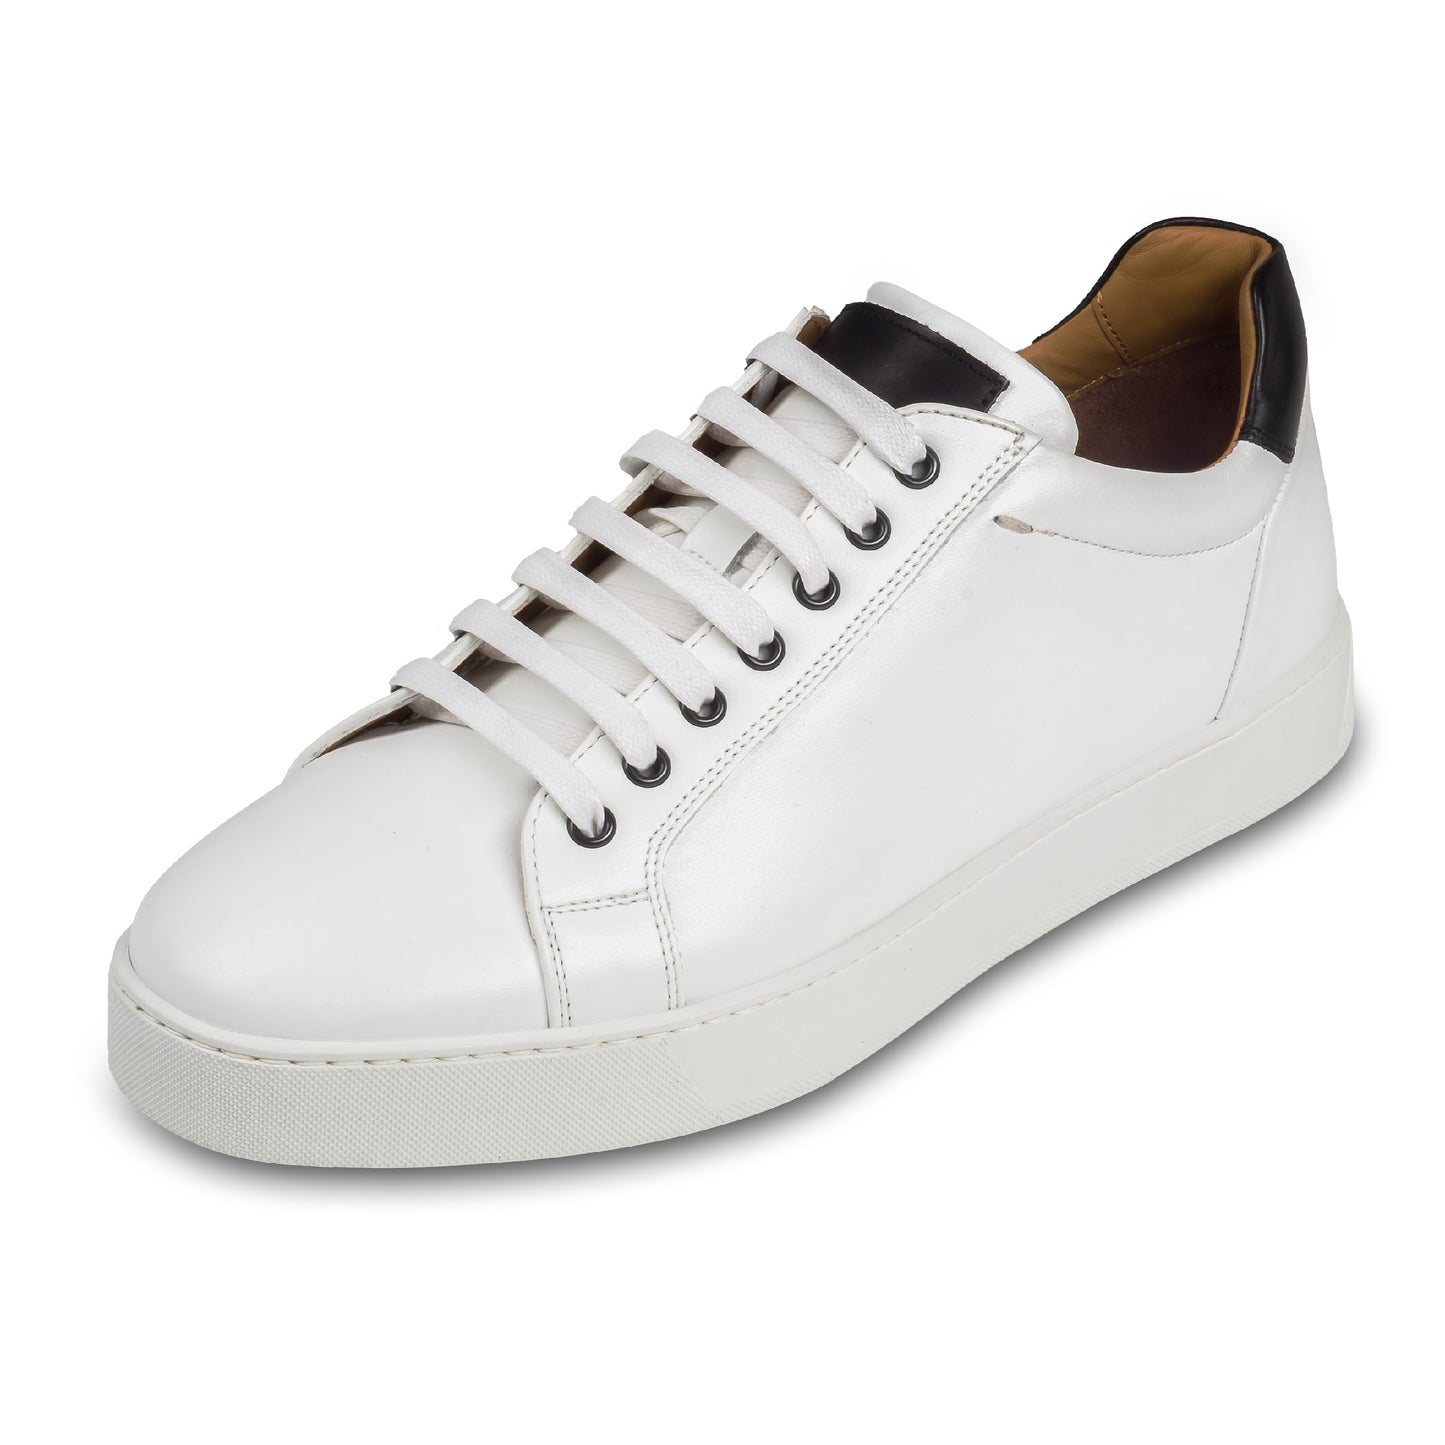 Triverflight – Italienische Herren-Sneaker in weiß mit schwarzer Ferse. Aus Kalbsleder handgefertigt. Schräge Ansicht linker Schuh.